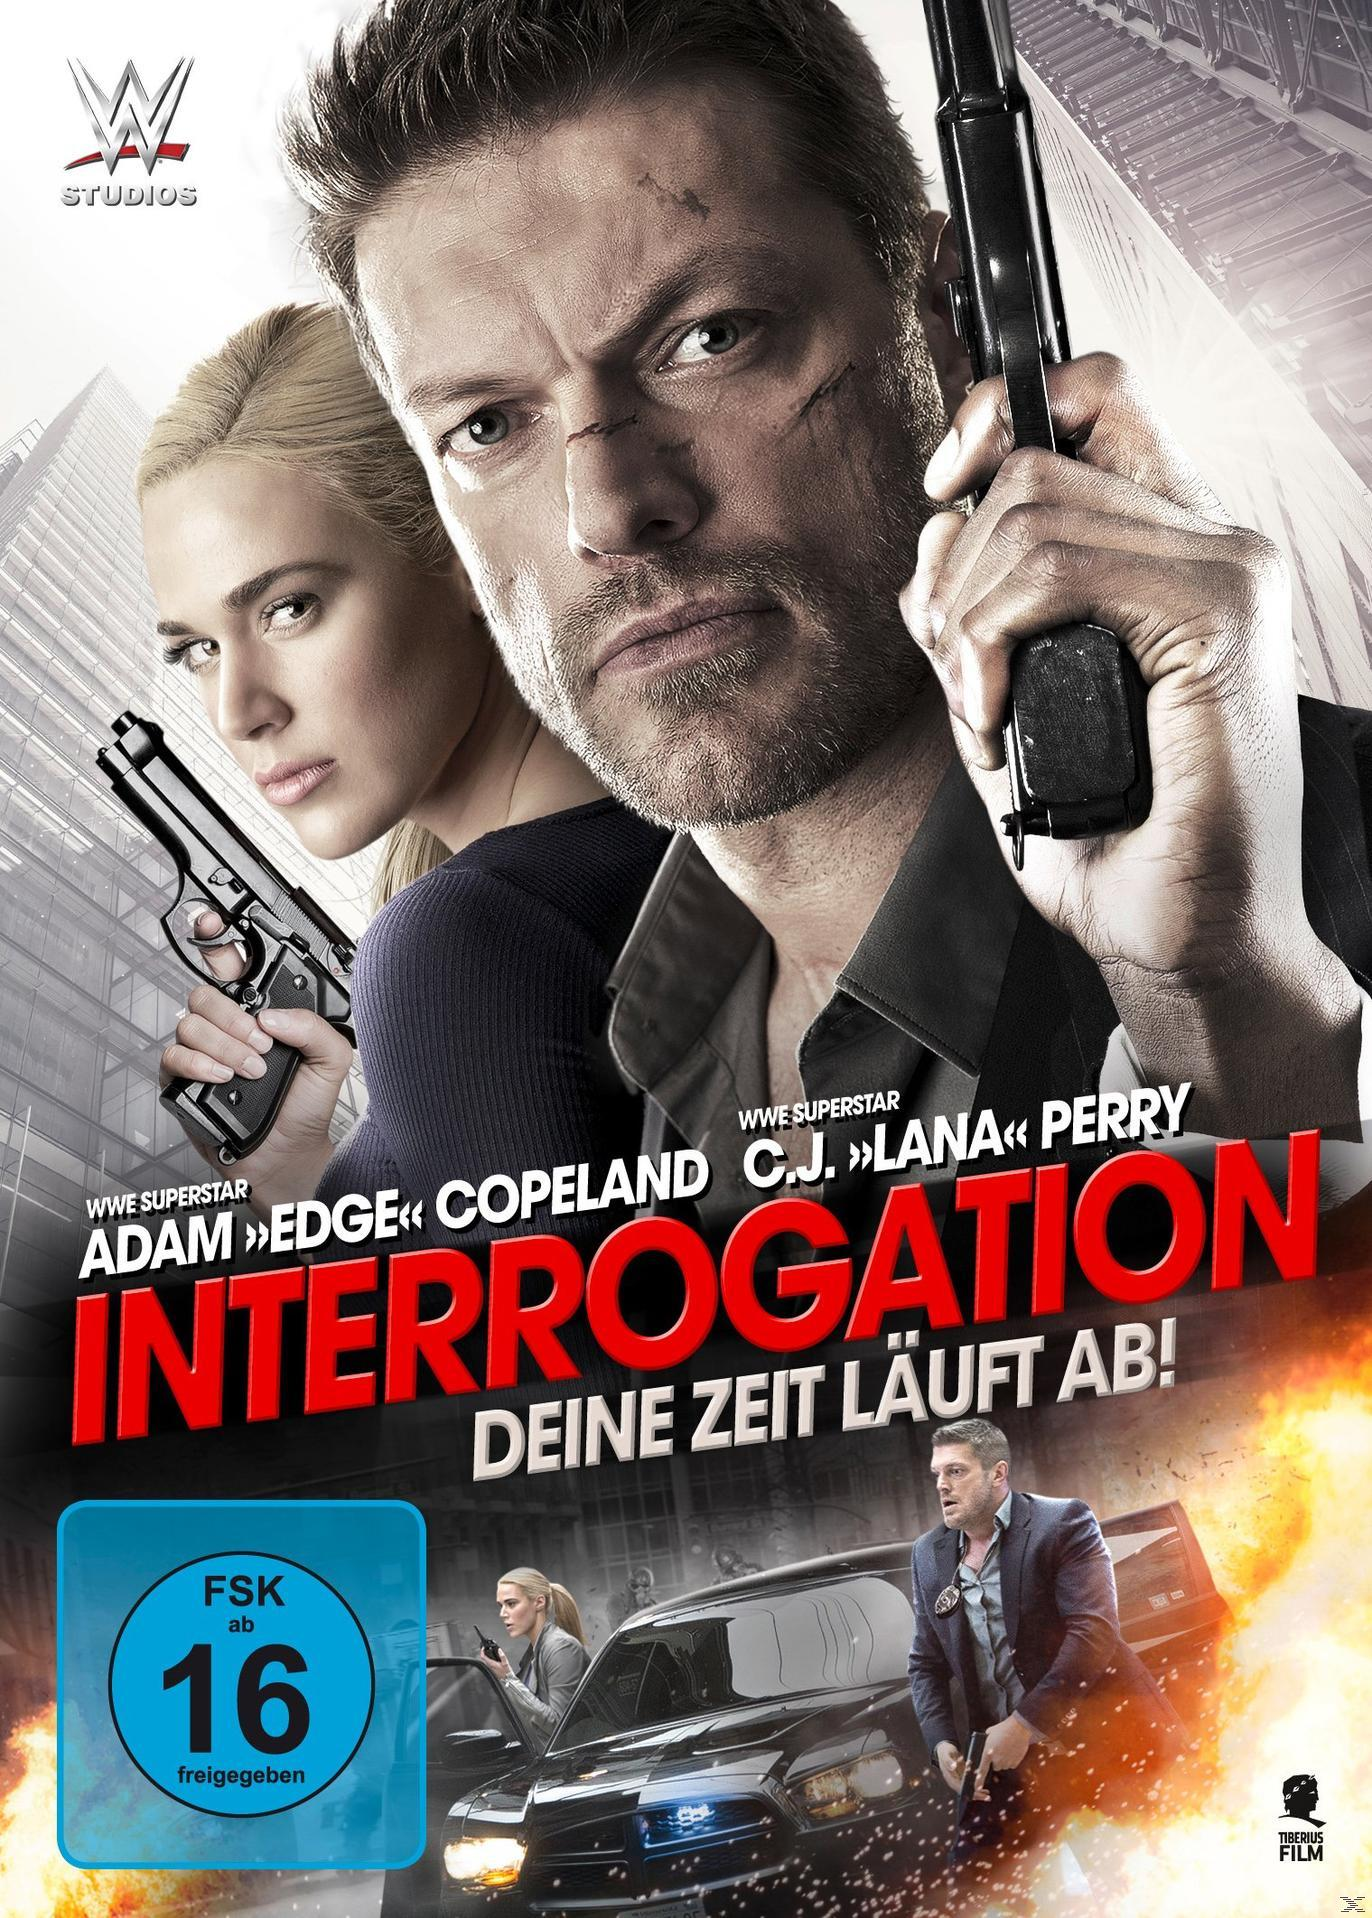 Interrogation - Deine Zeit läuft DVD ab